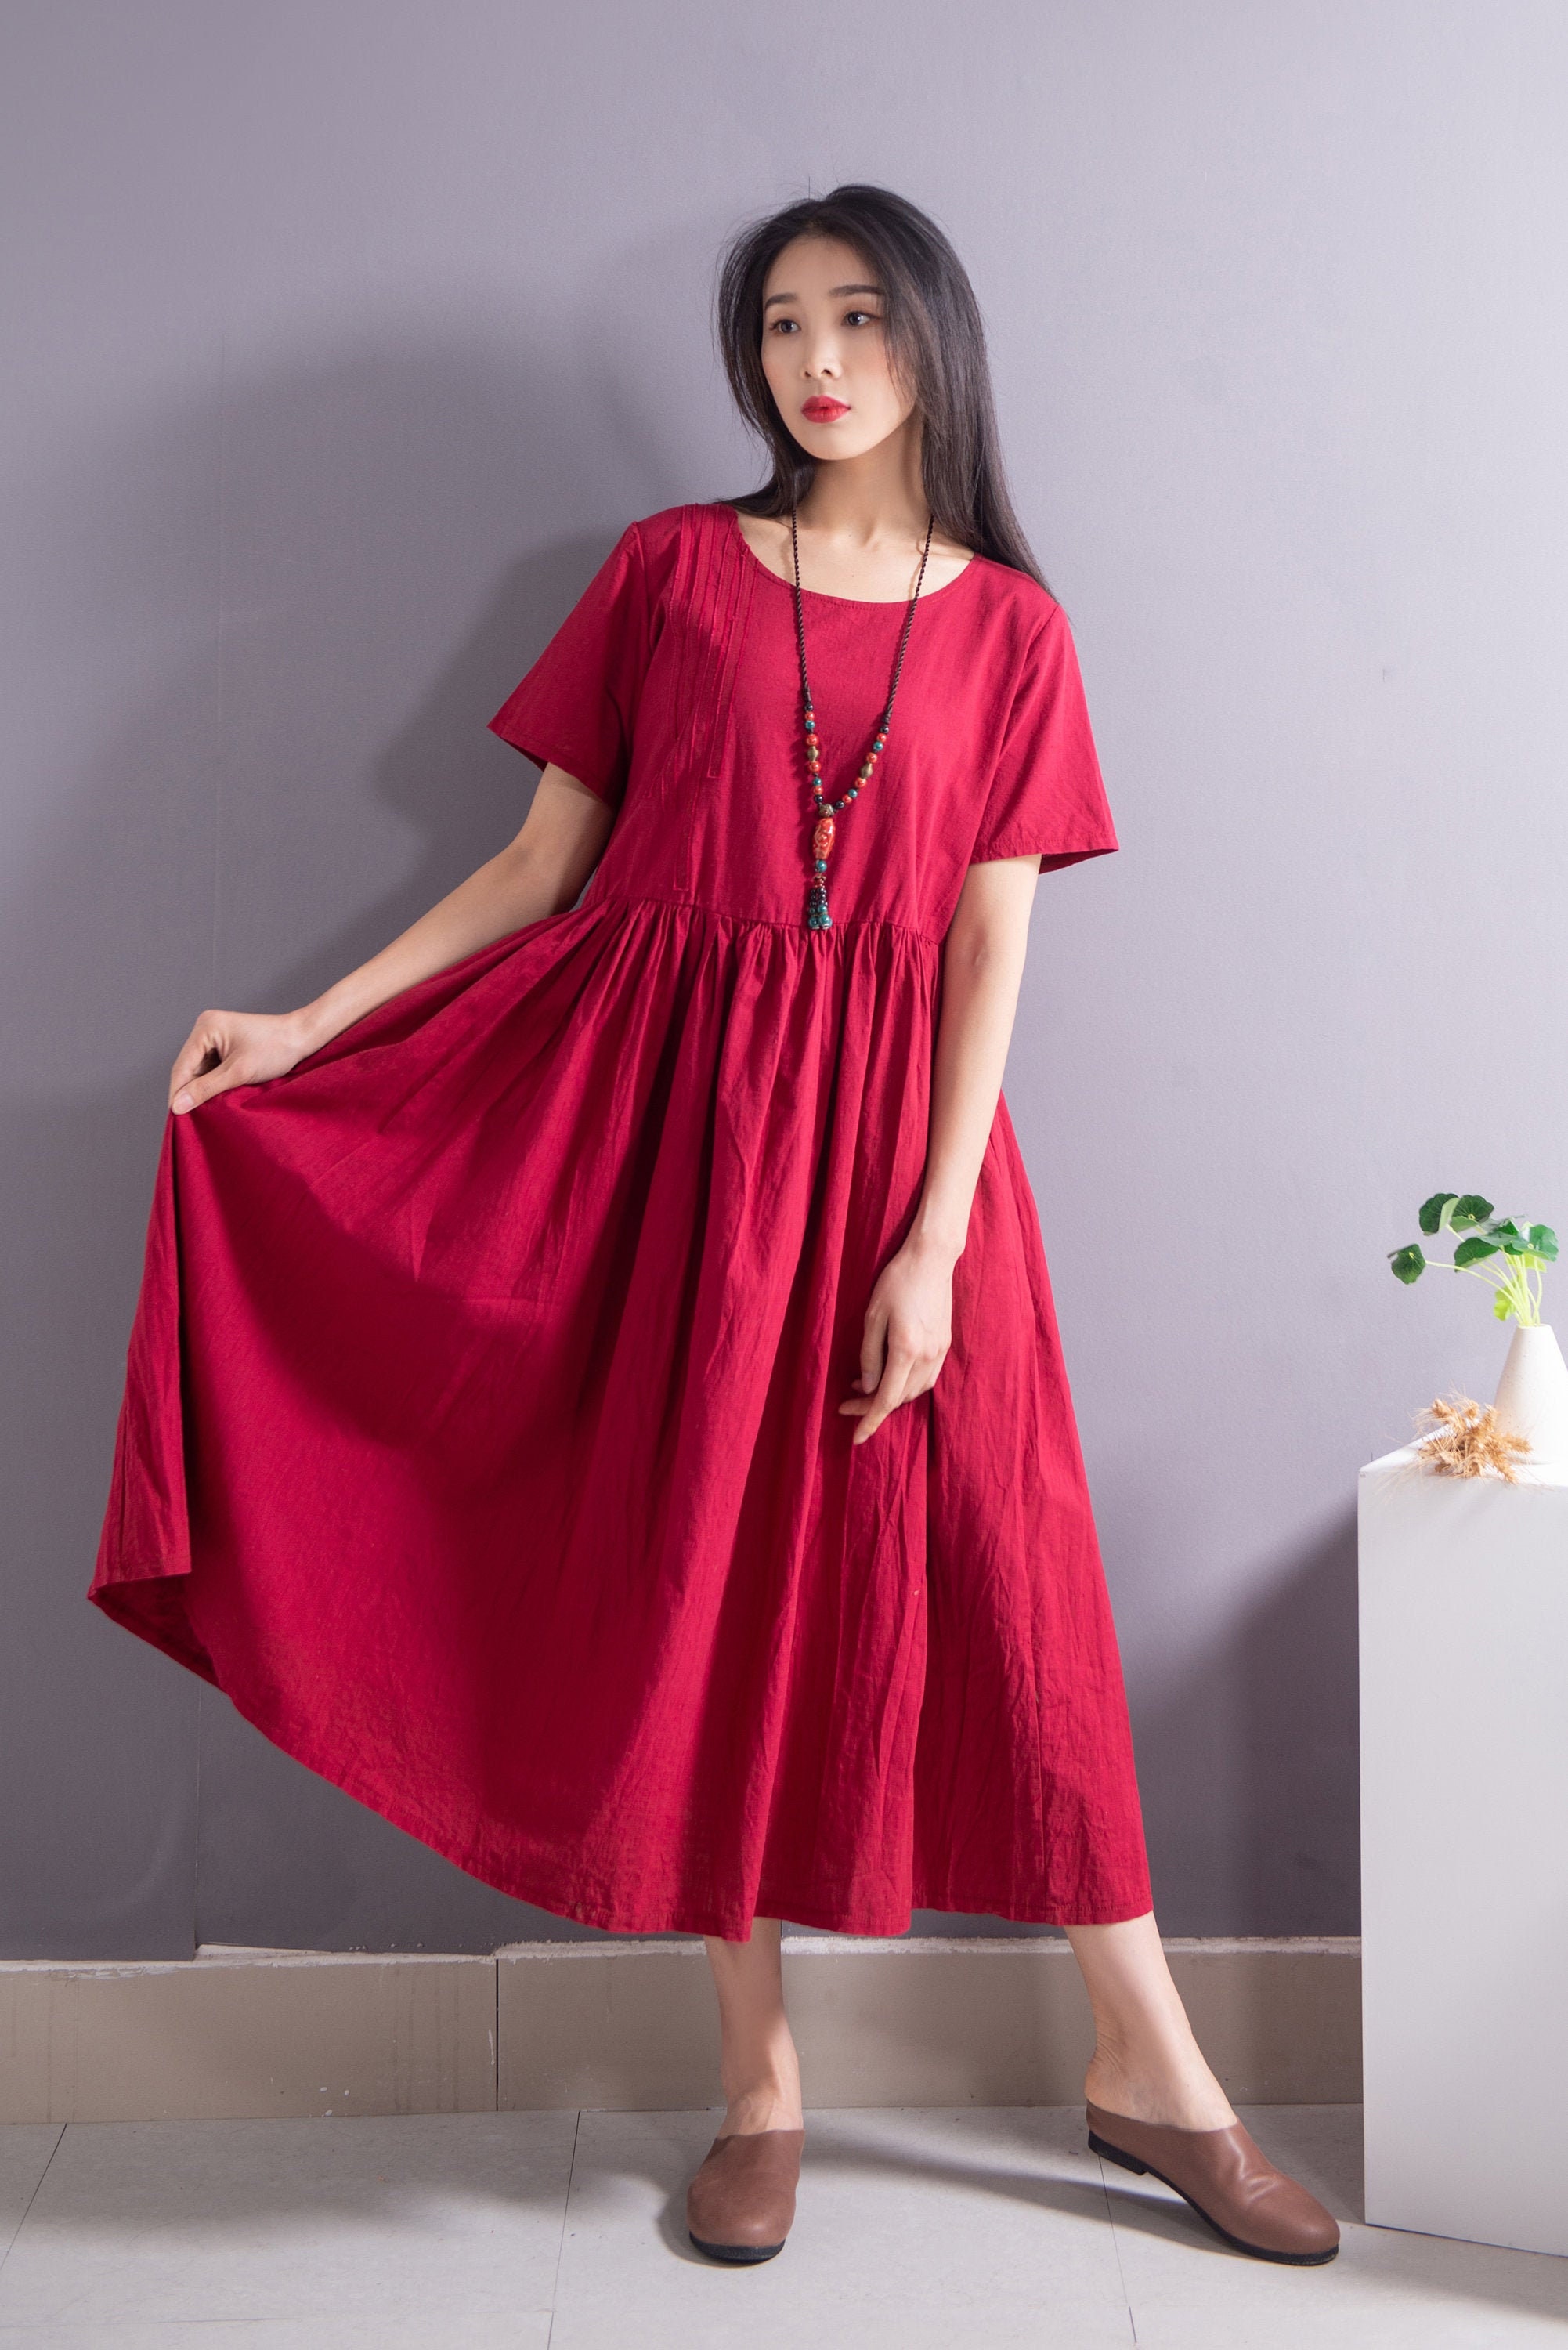 A-line Loose Summer Linen Dress Soft Cotton Linen Maxi Dress Casual  Oversized Dress Plus Size Linen Plus Size Dress Plus Size Clothing 